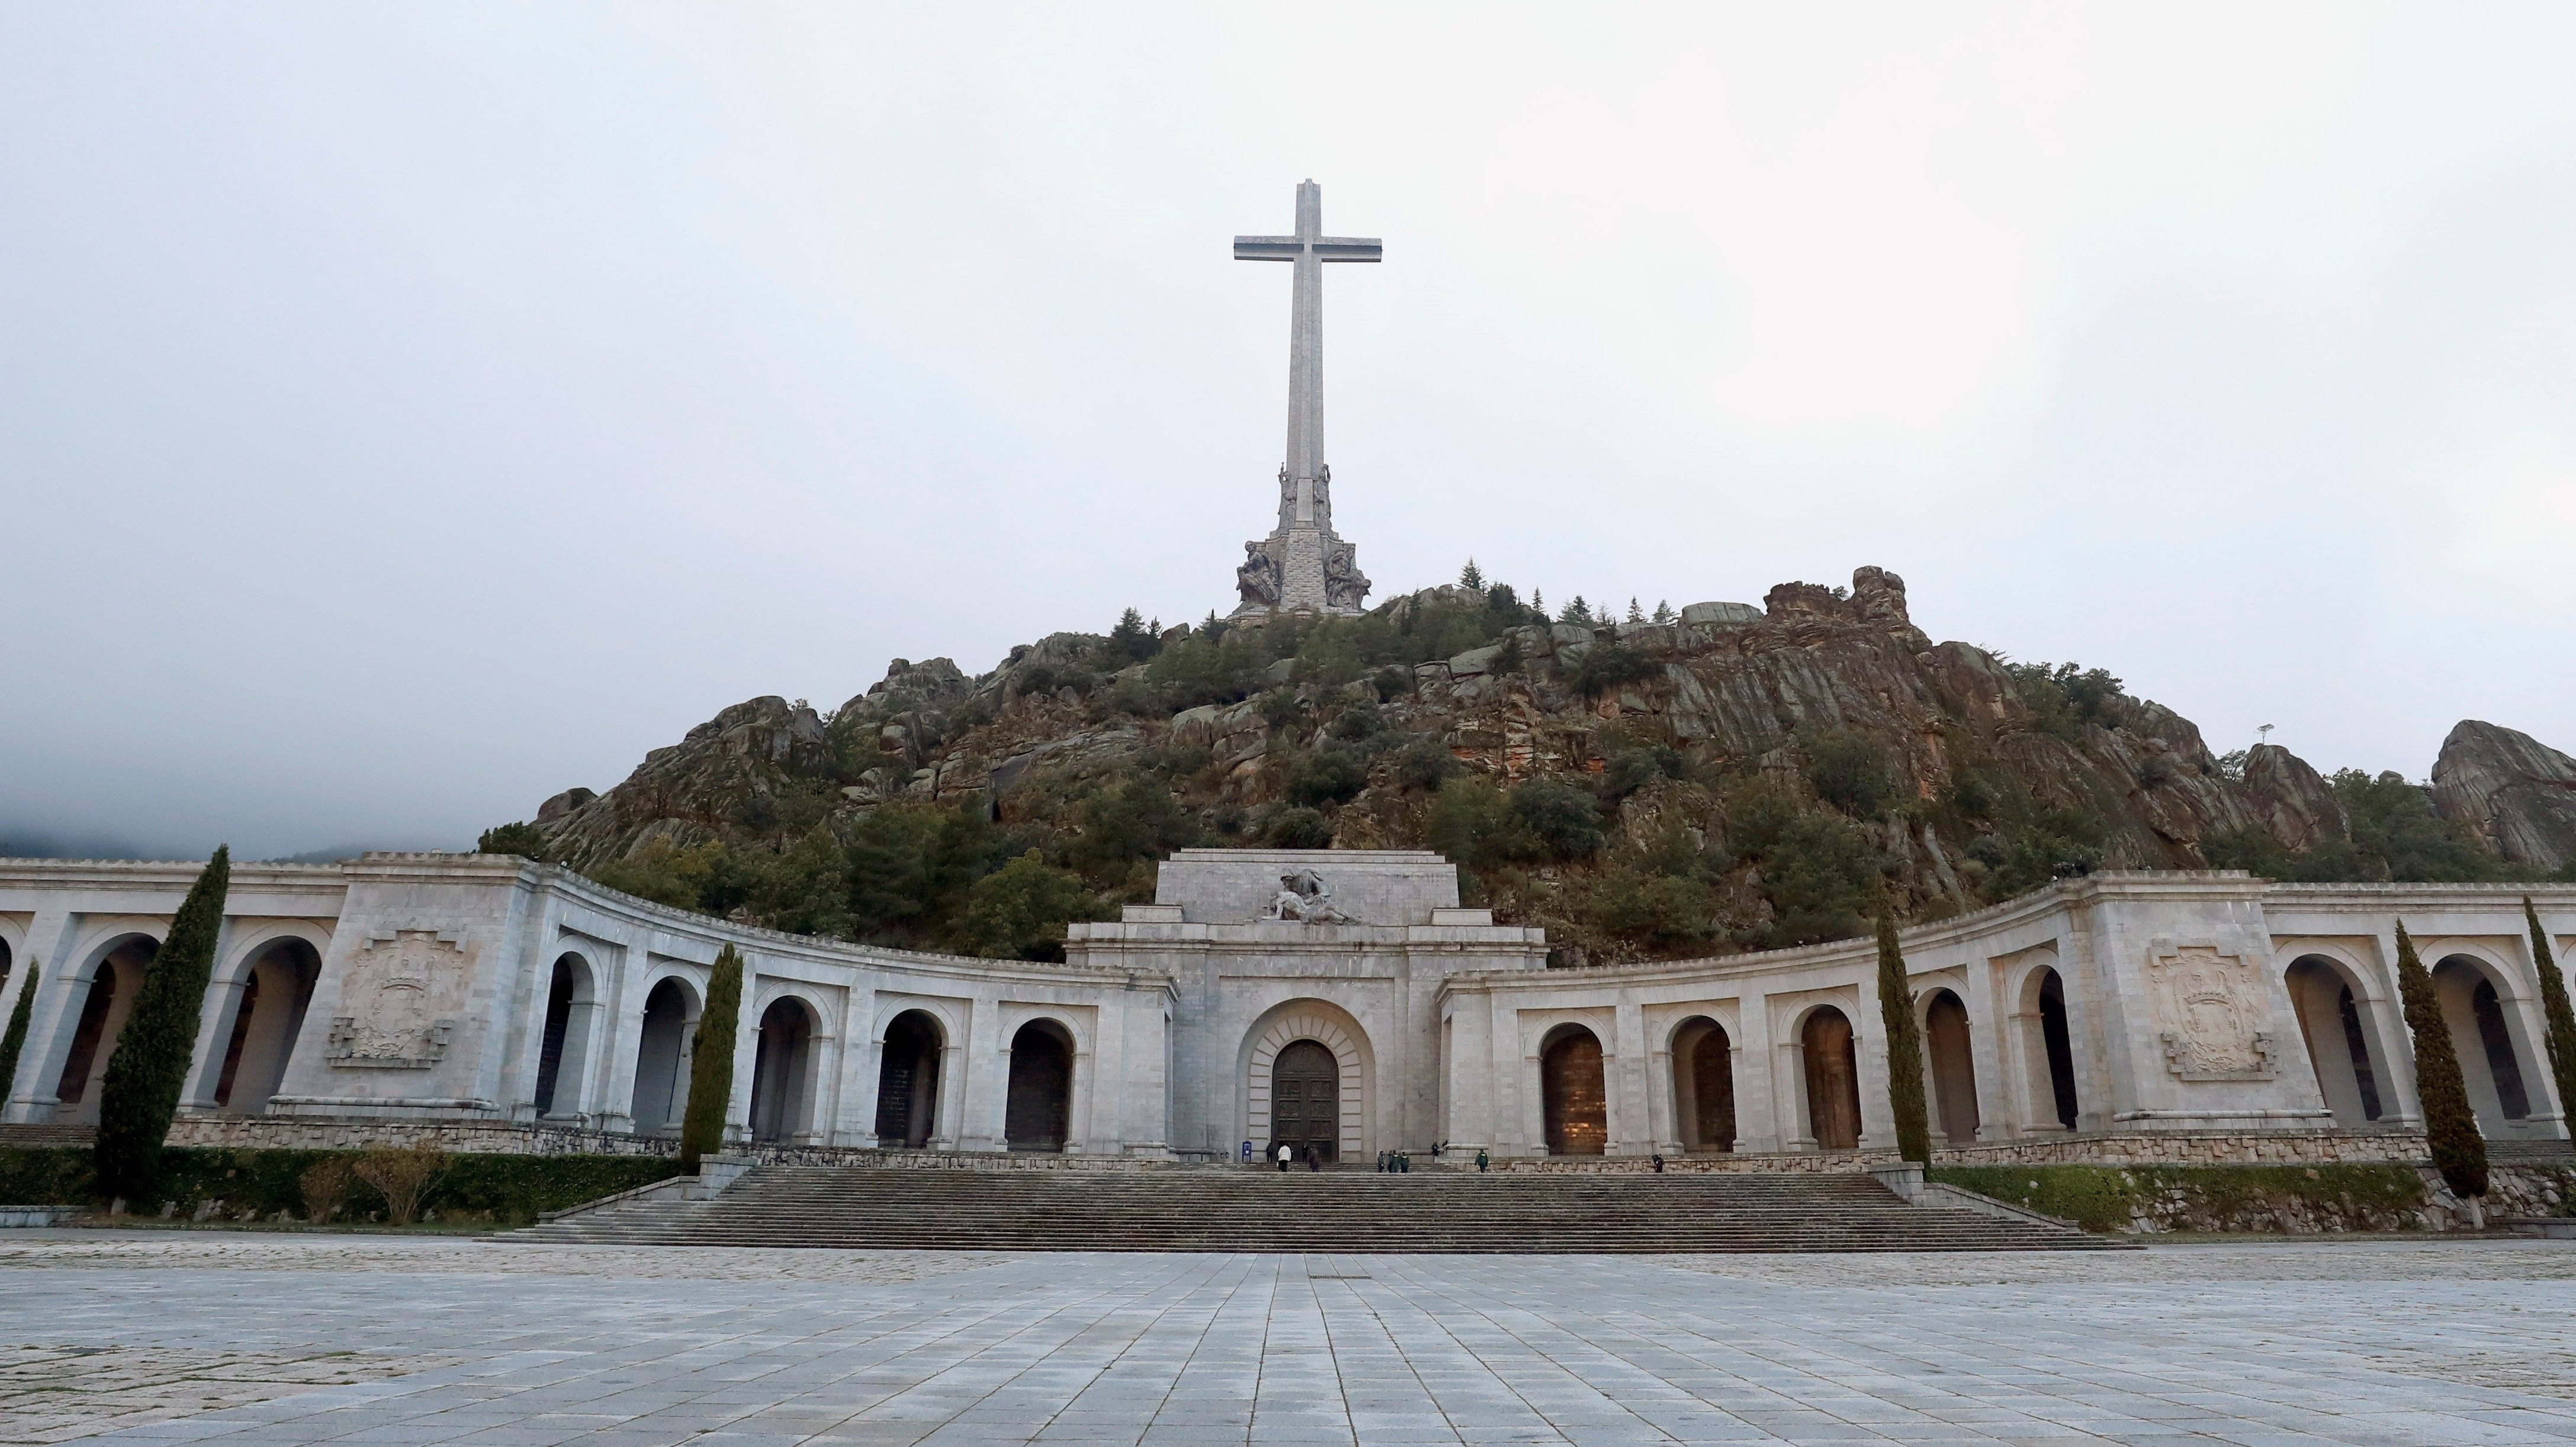 Aprobada la Ley de Memoria que hará del Valle de los Caídos un cementerio civil